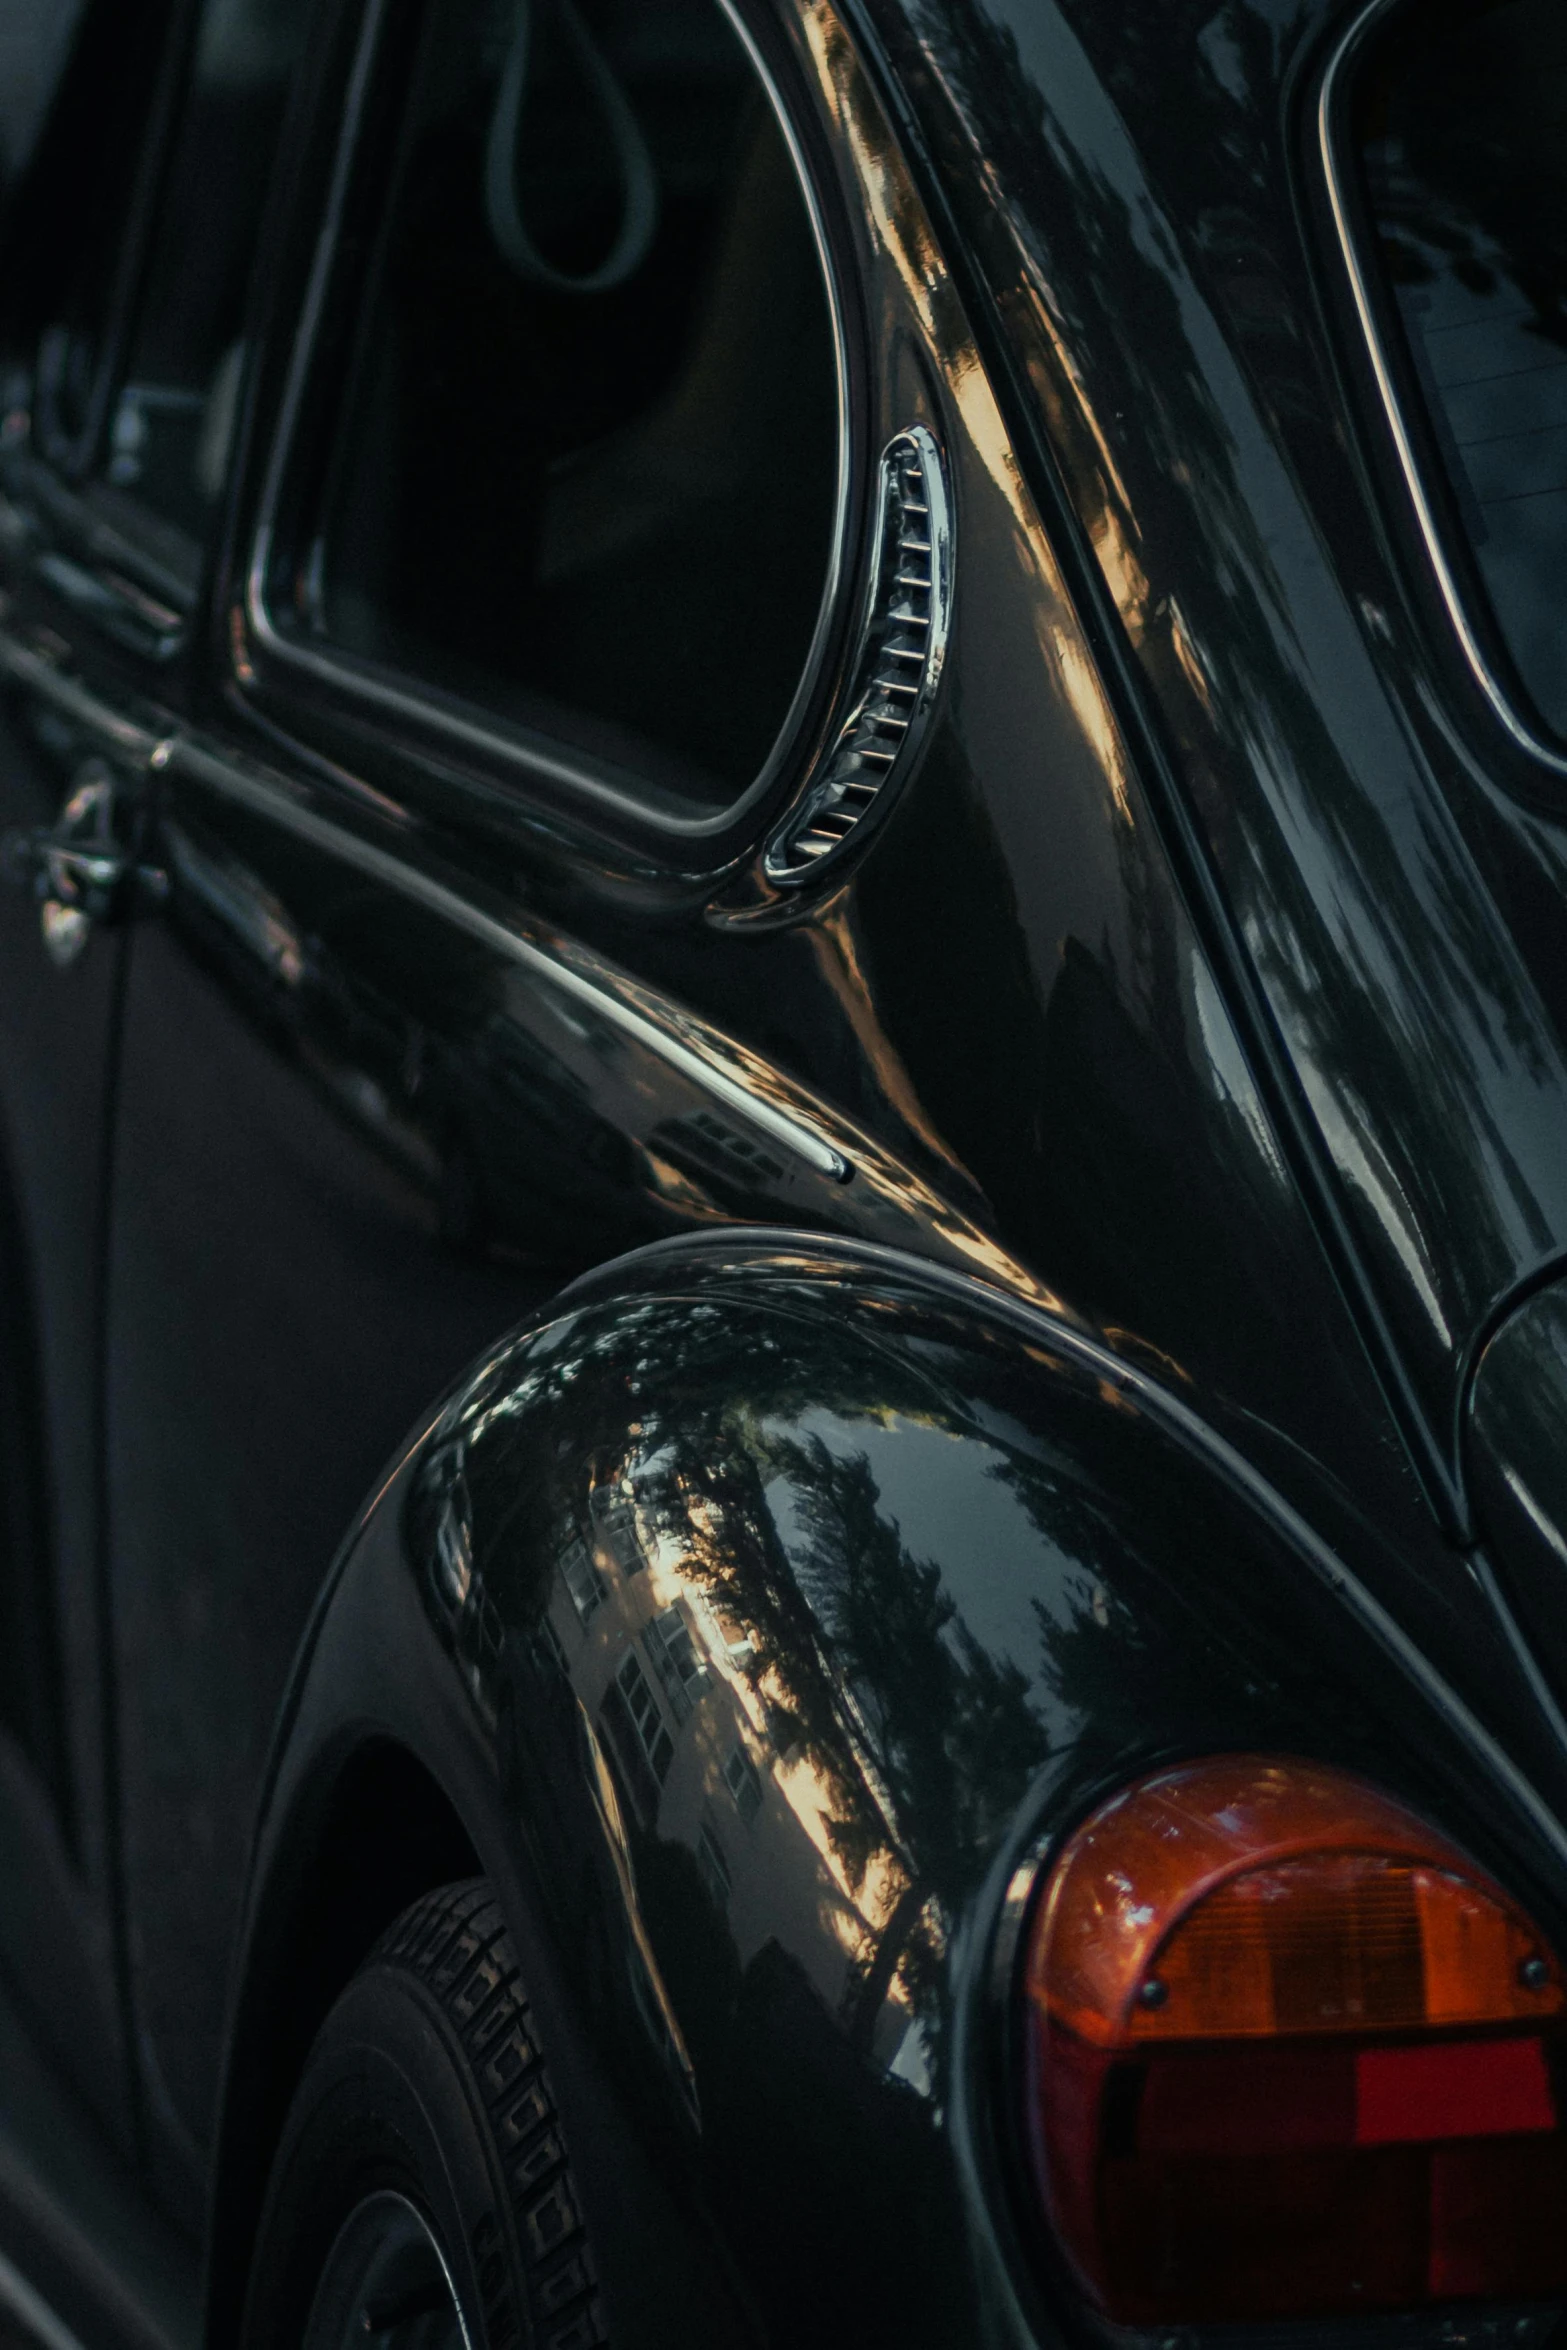 closeup of the rear bumper of a vintage car